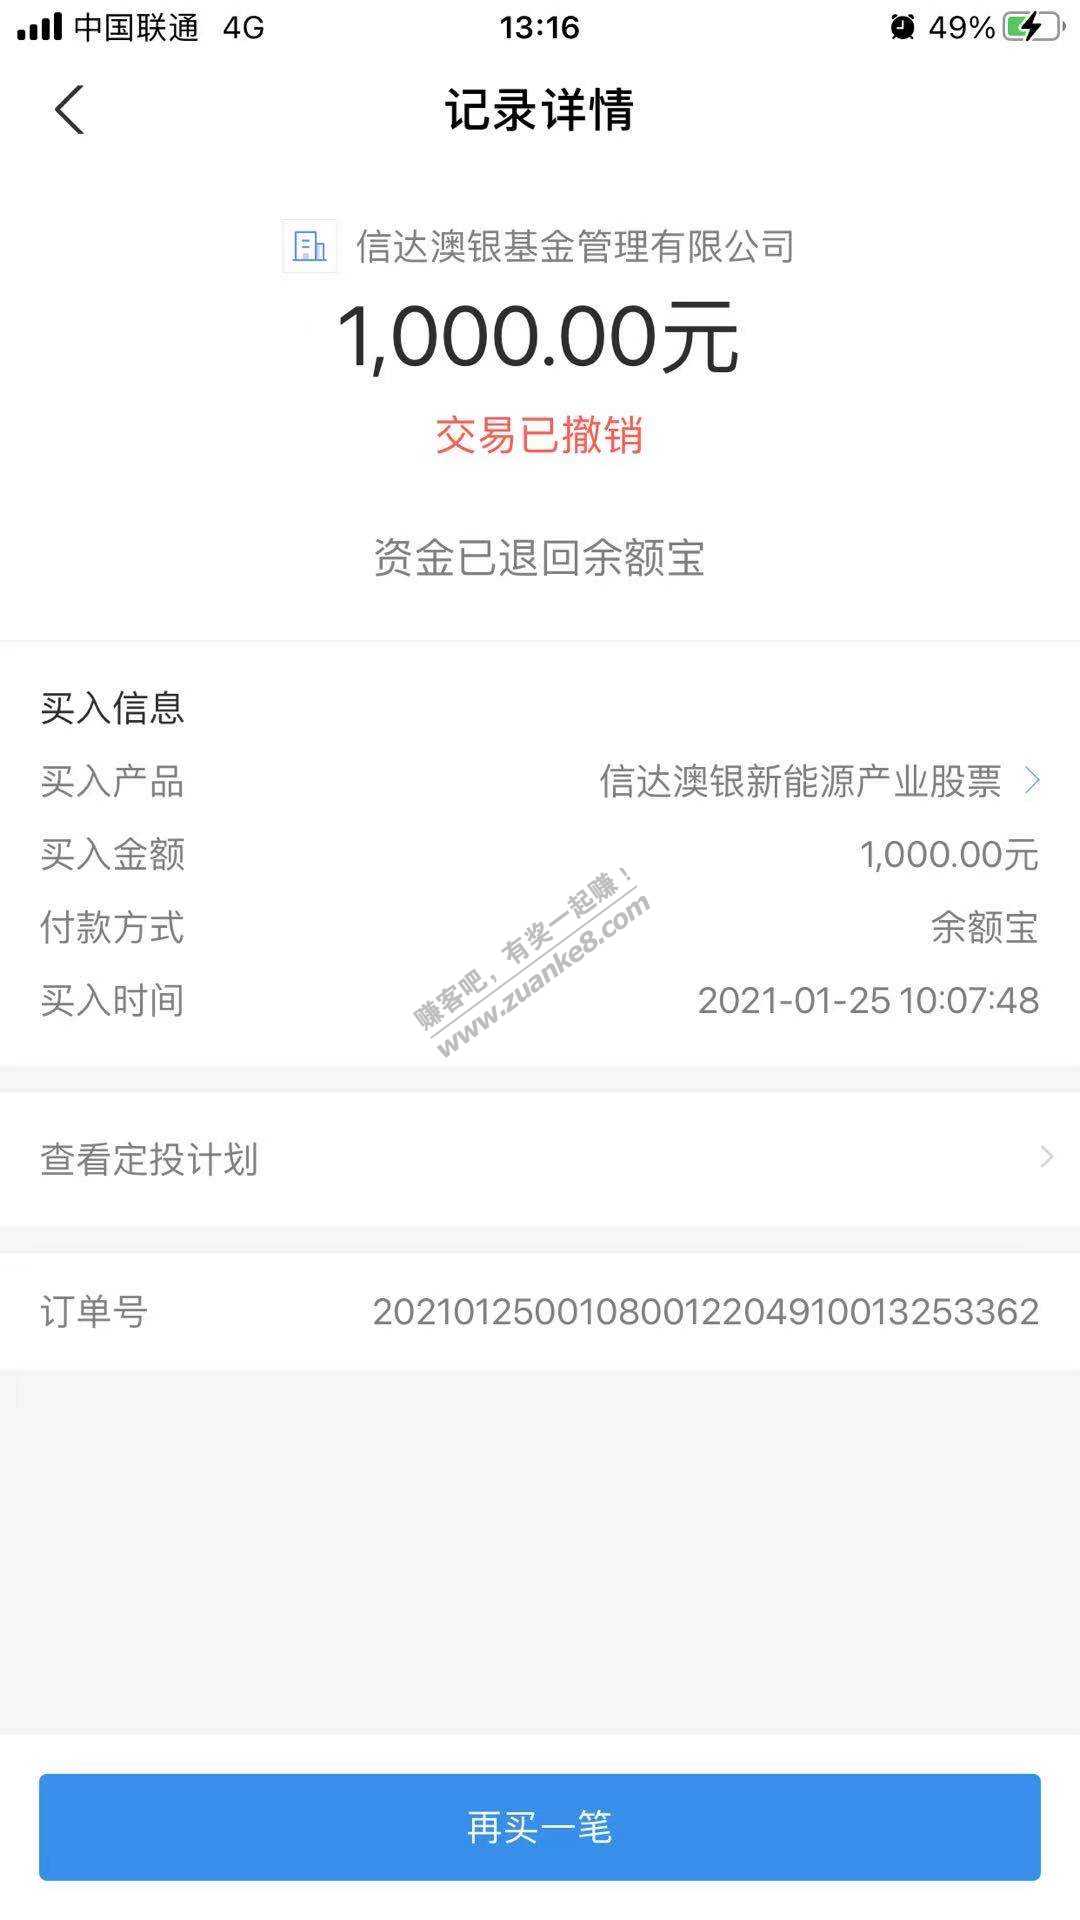 2021.1.25基金定投-惠小助(52huixz.com)